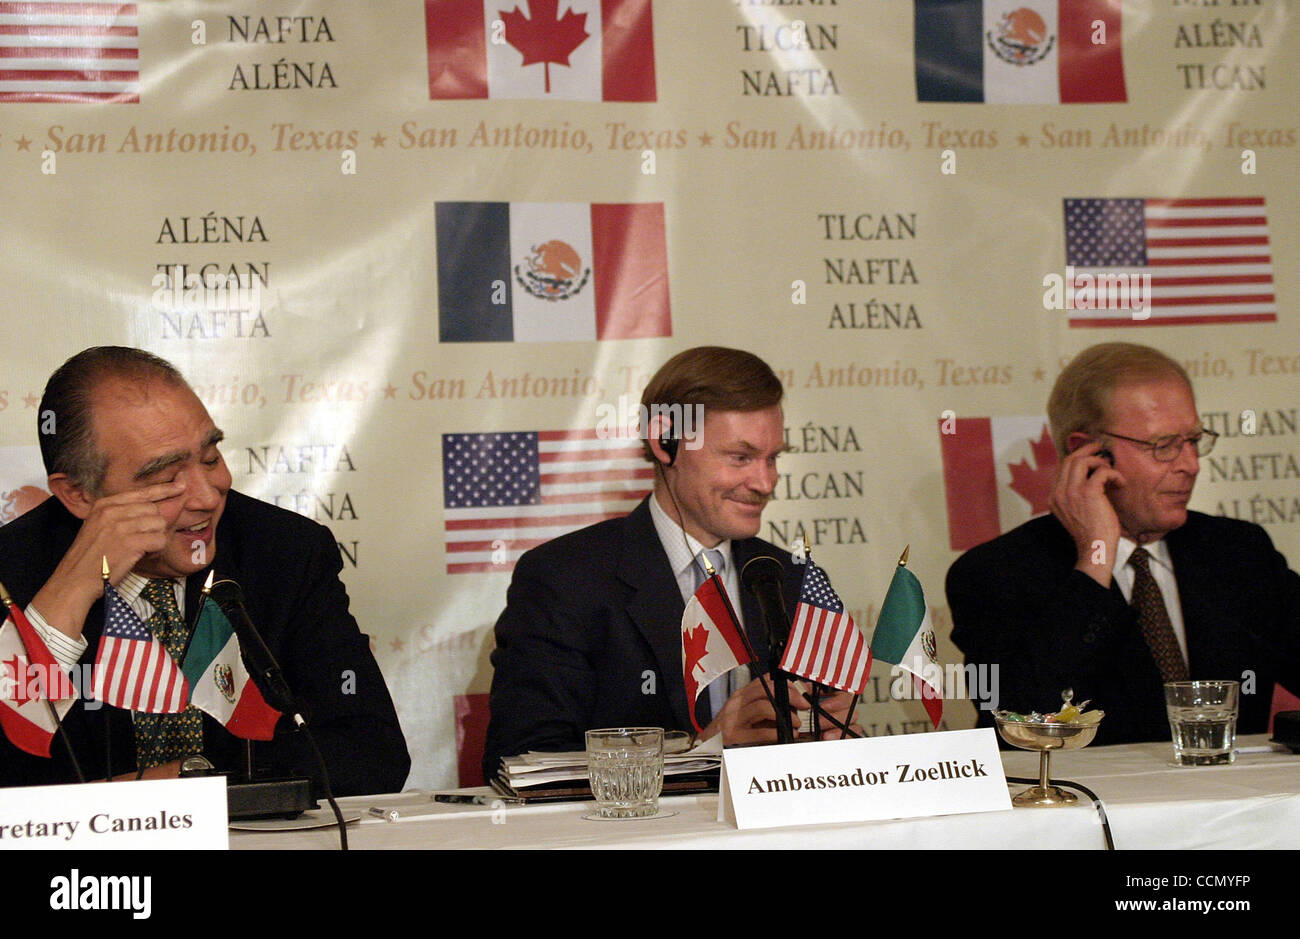 L'ALENA ; BUS ; 16/07/04 ; Réunion après dix ans de l'Accord de libre-échange nord-américain (ALENA), le chef des négociateurs commerciaux du Mexique, des États-Unis et du Canada discutent de l'avenir de l'ALENA à l'Hôtel Saint Antoine à San Antonio, Texas, le vendredi 16 juillet 2004. La réalisation d'une conférence de presse et Banque D'Images